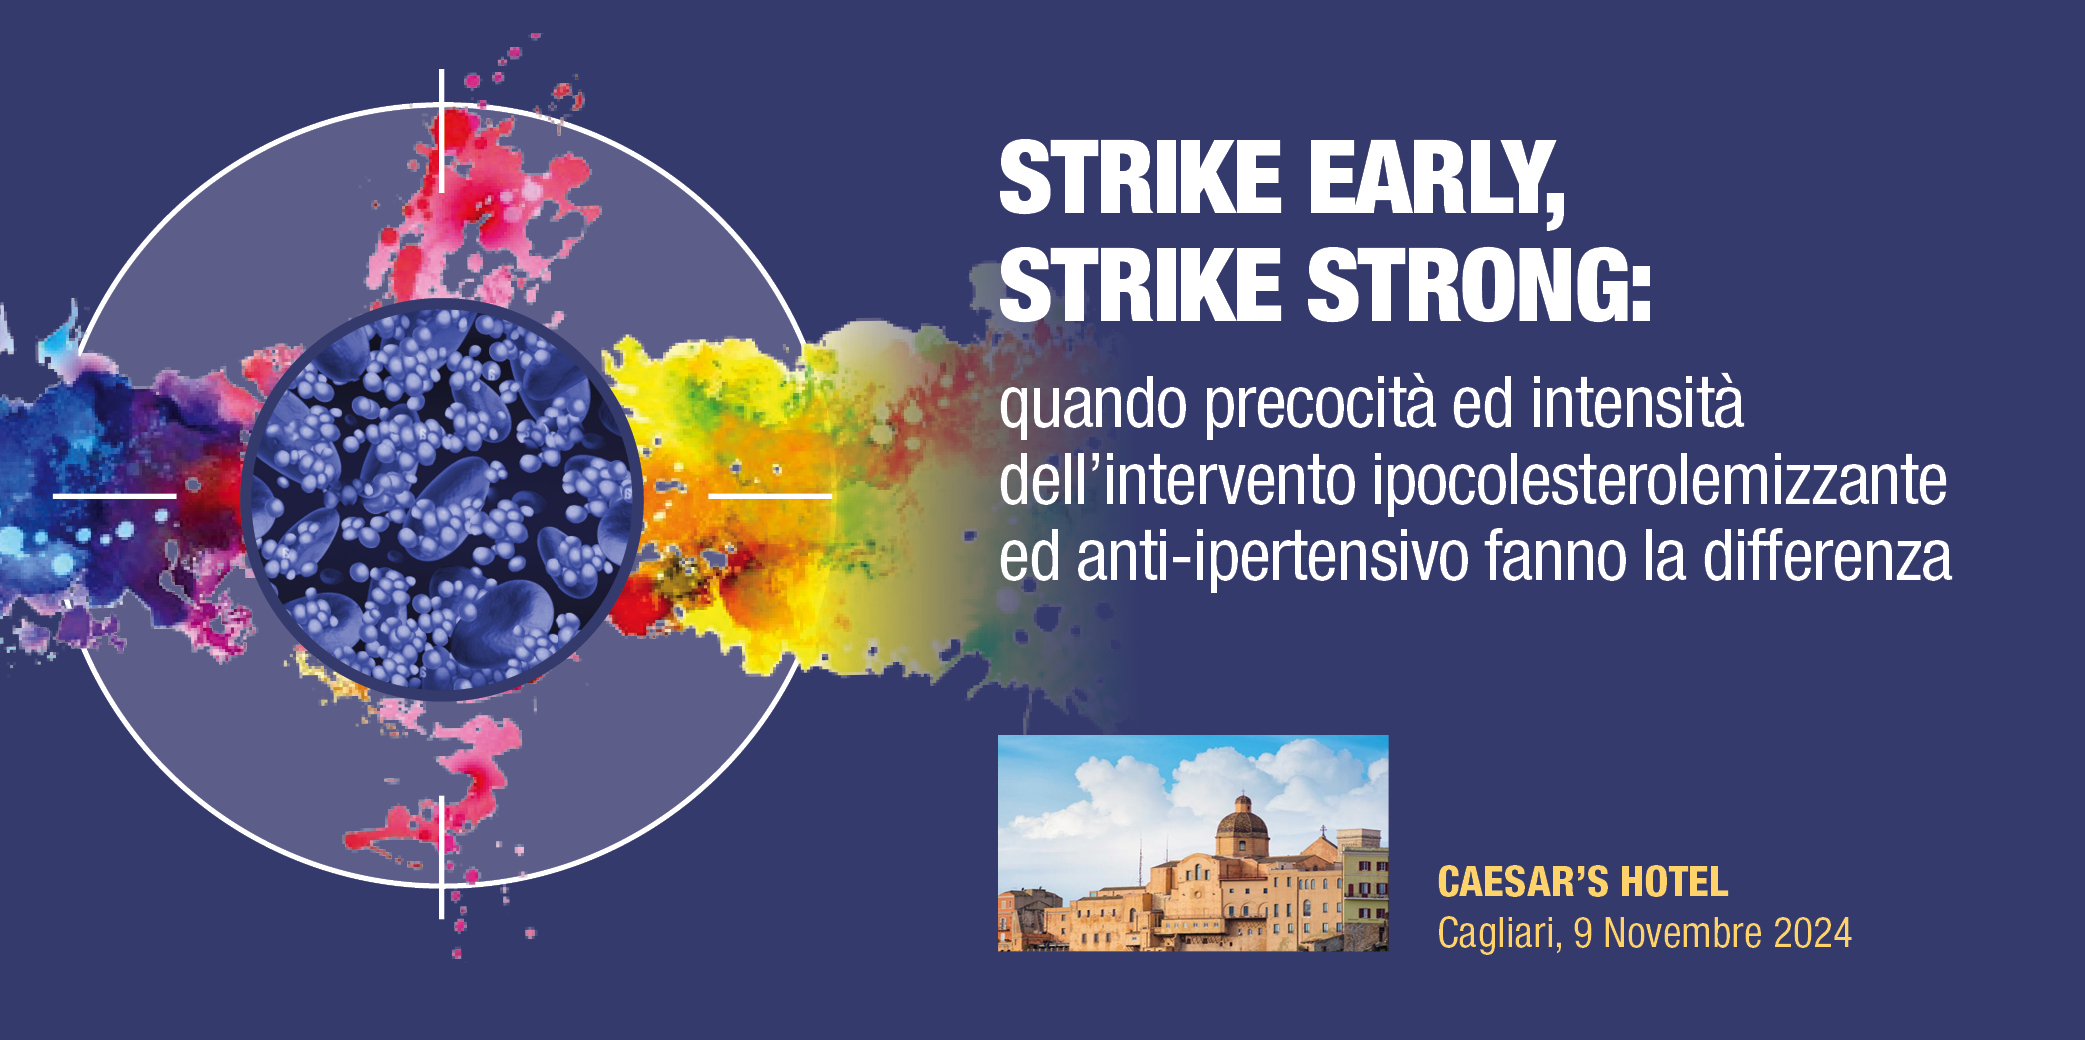 STRIKE EARLY, STRIKE STRONG: quando precocità ed intensità dell’intervento ipocolesterolemizzante ed anti-ipertensivo fanno la differenza – Cagliari, 9 Novembre 2024